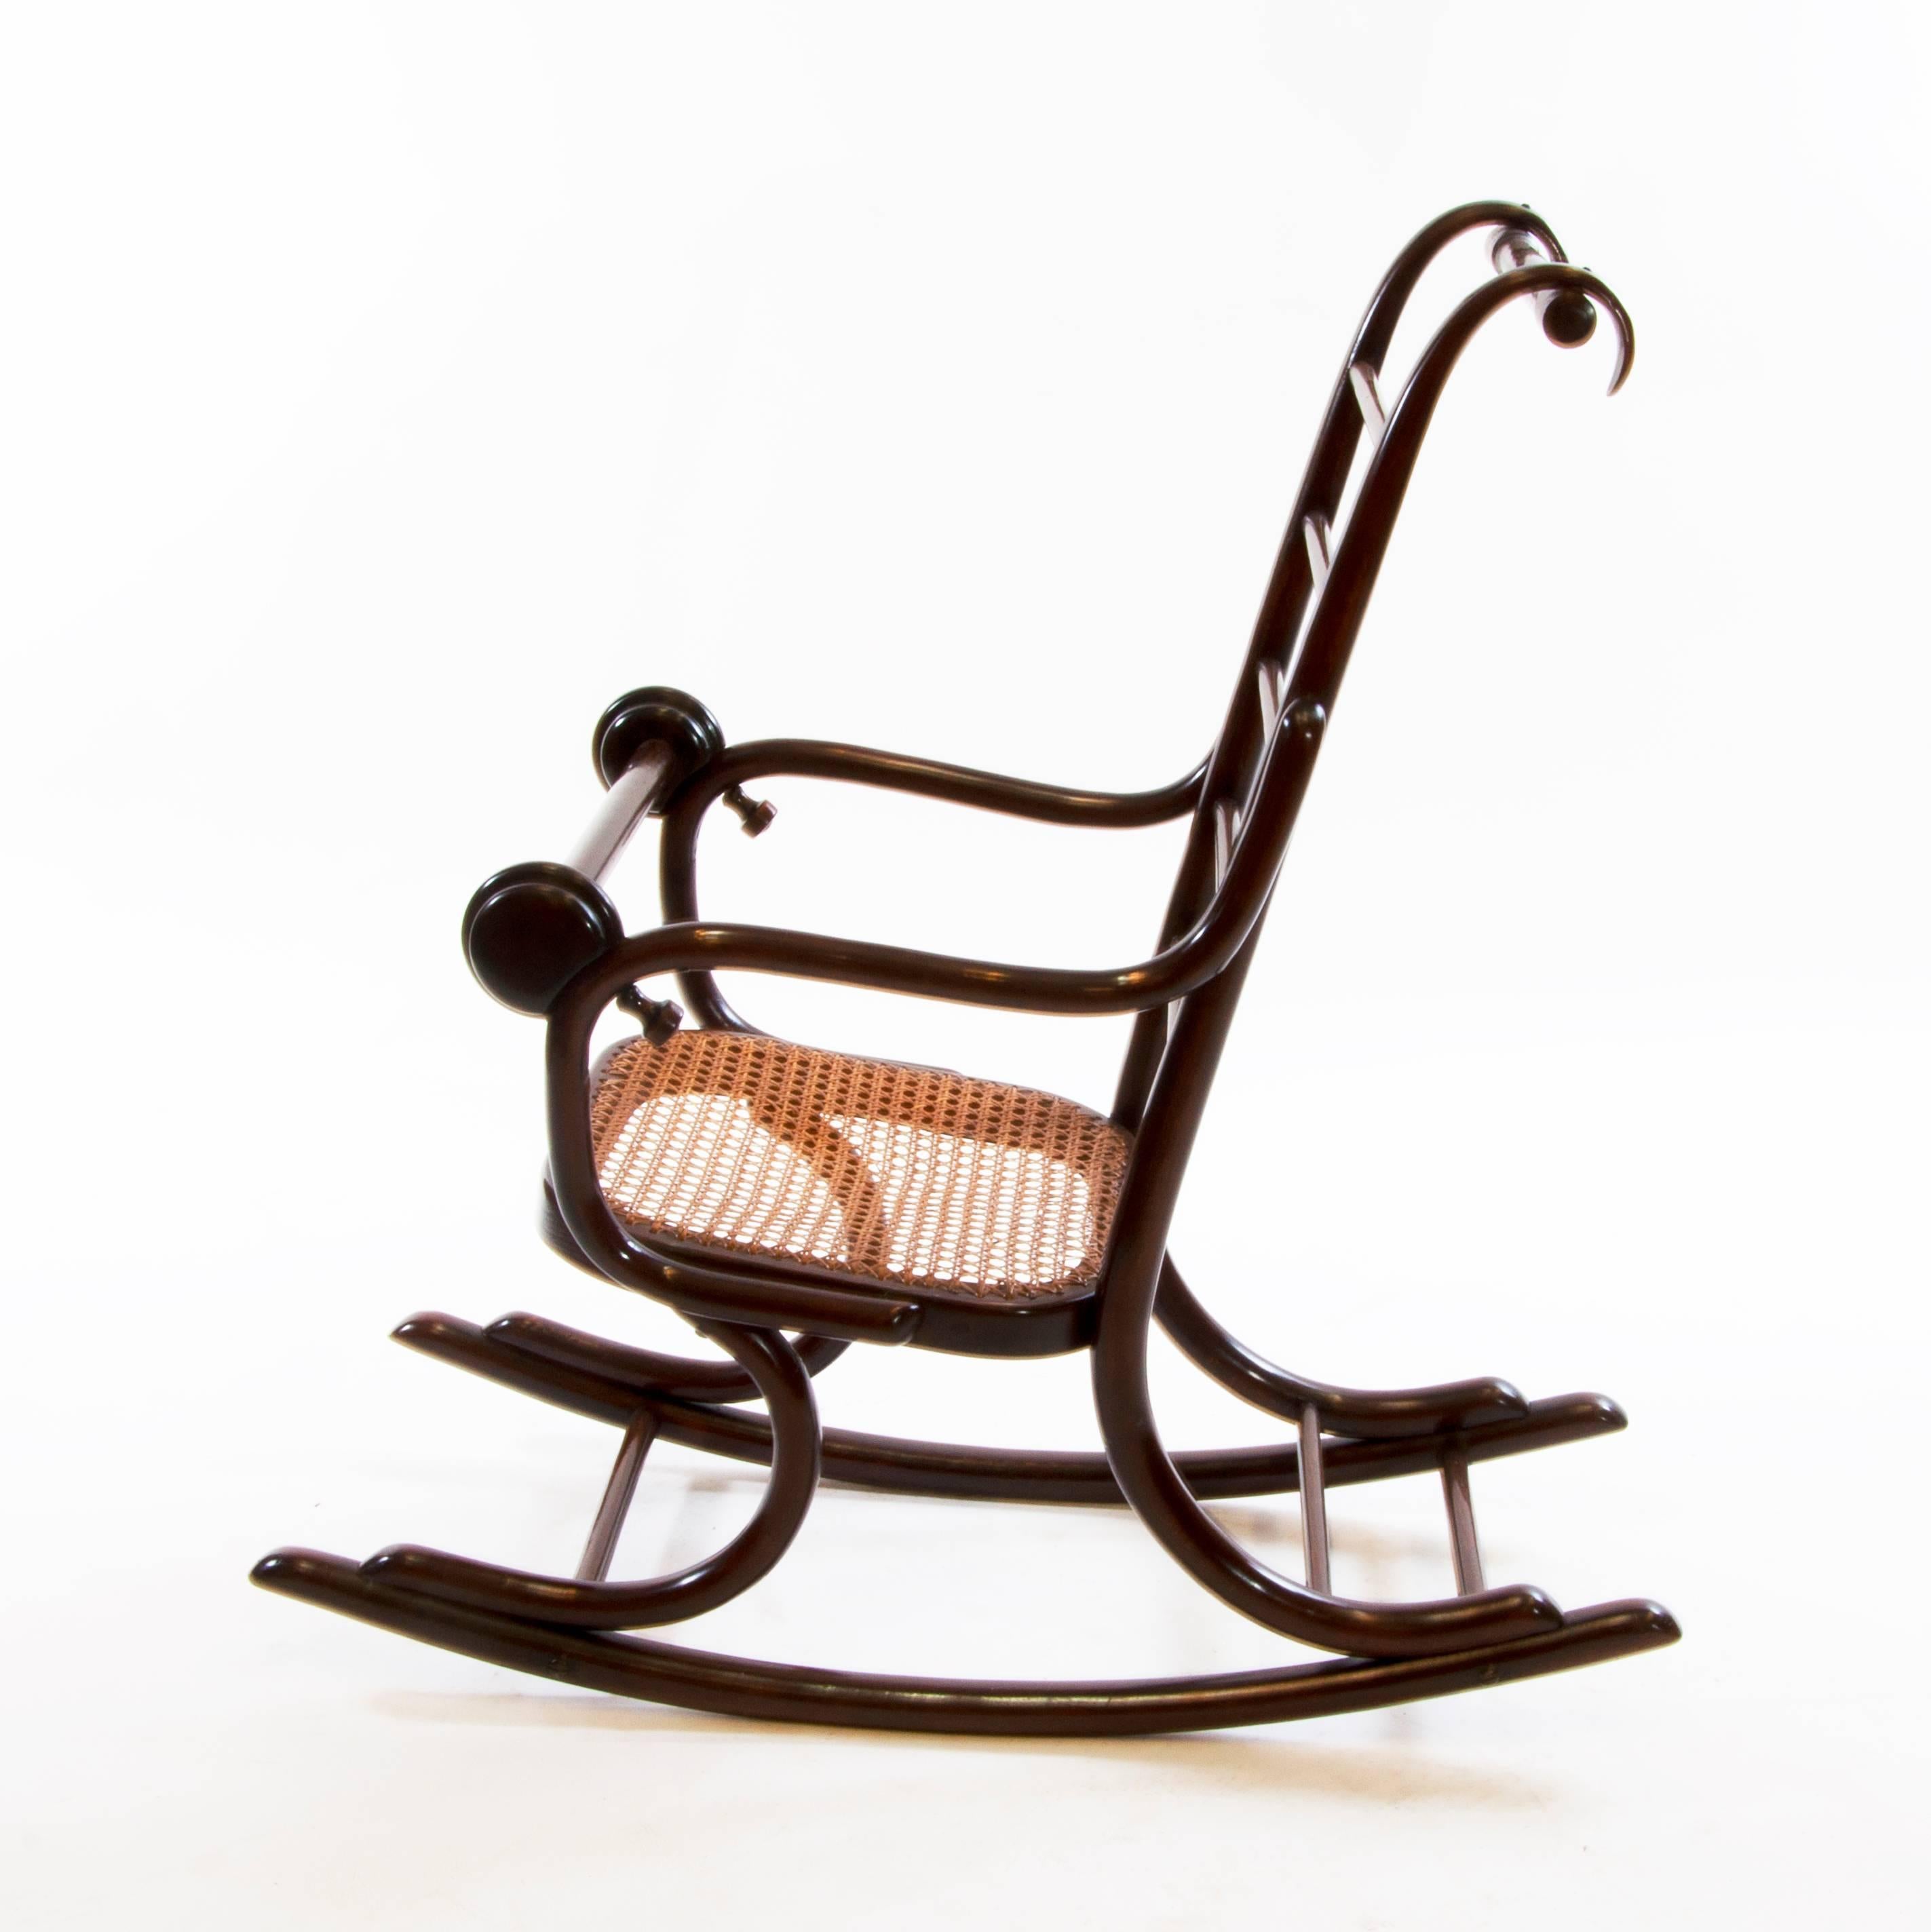 Sehr seltener und antiker Thonet-Stuhl, der zwischen 1920-1929 hergestellt wurde und in Zusammenarbeit mit Professor Epstein im Jahr 1920 von der Firma Gebruder Thonet entworfen wurde.

Das Unternehmen Thonet wurde von Michael Thonet gegründet und